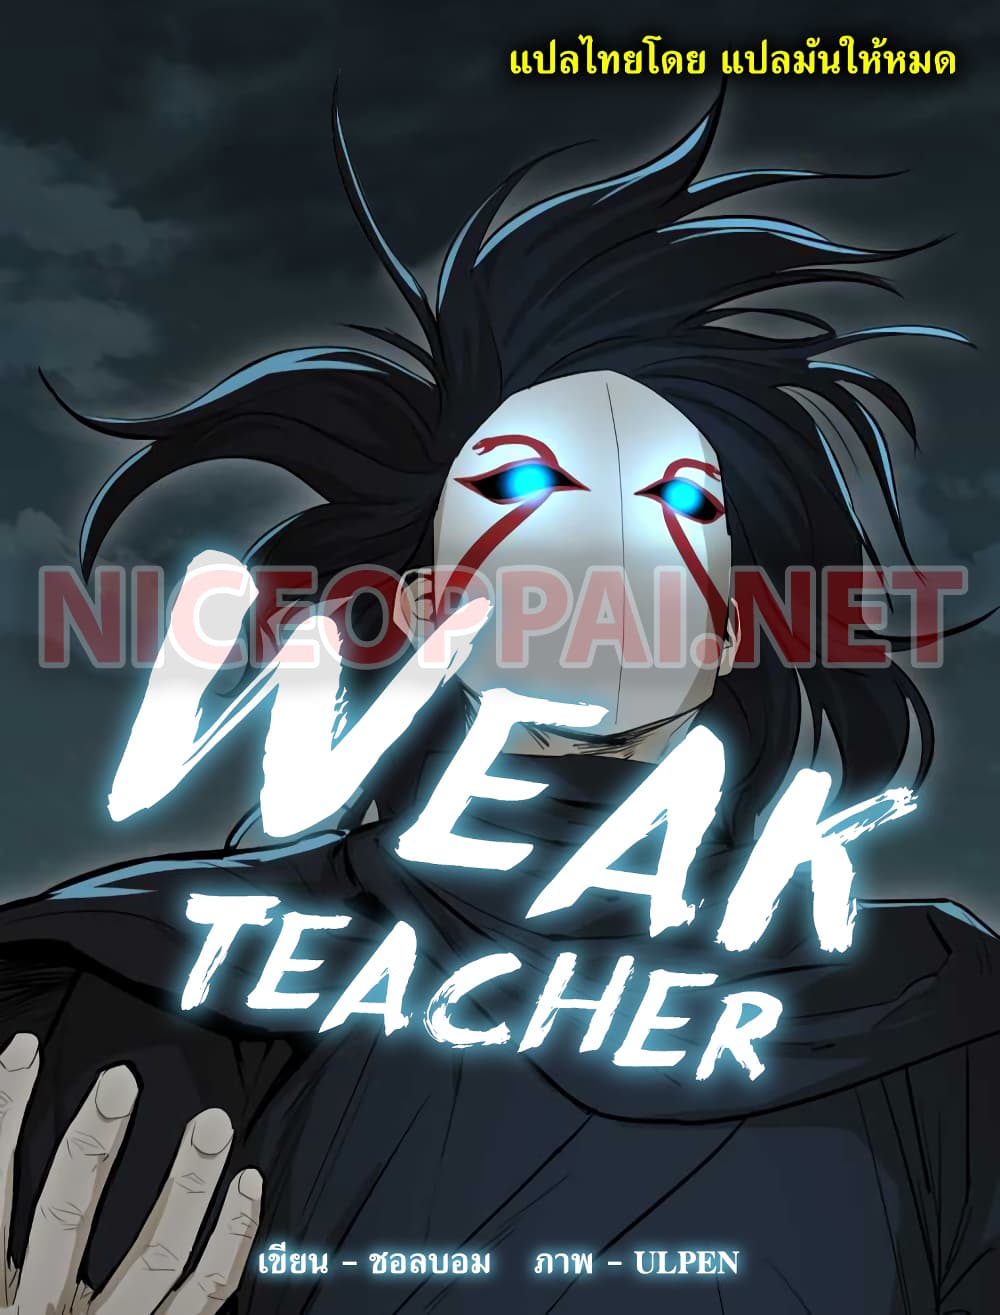 Weak Teacher 14-14